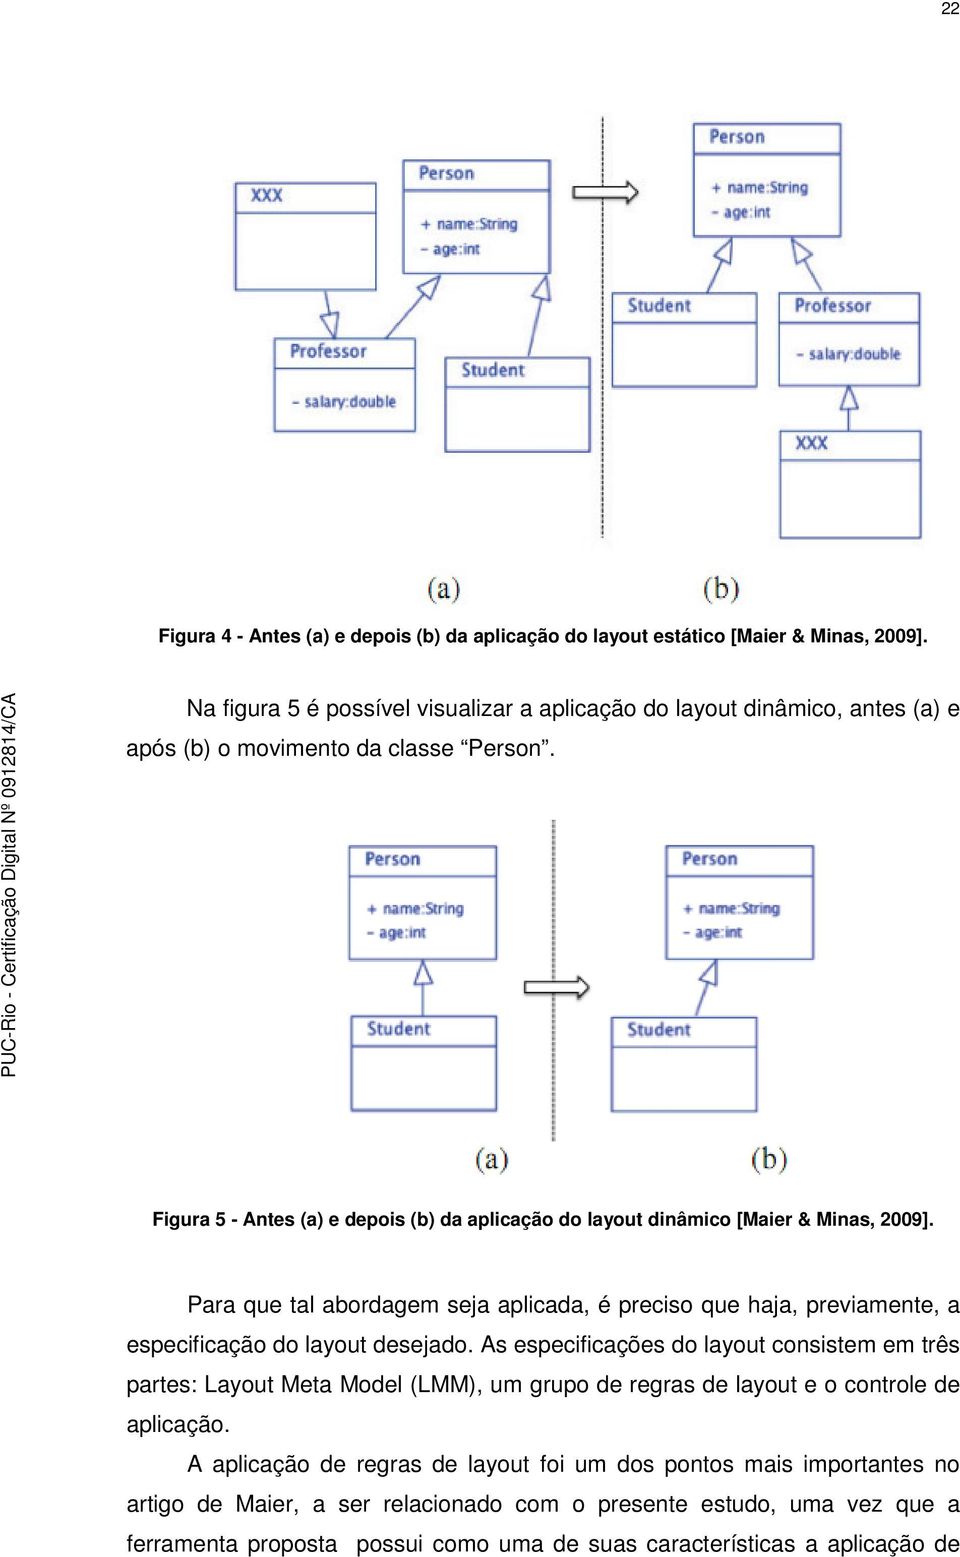 Figura 5 - Antes (a) e depois (b) da aplicação do layout dinâmico [Maier & Minas, 2009].